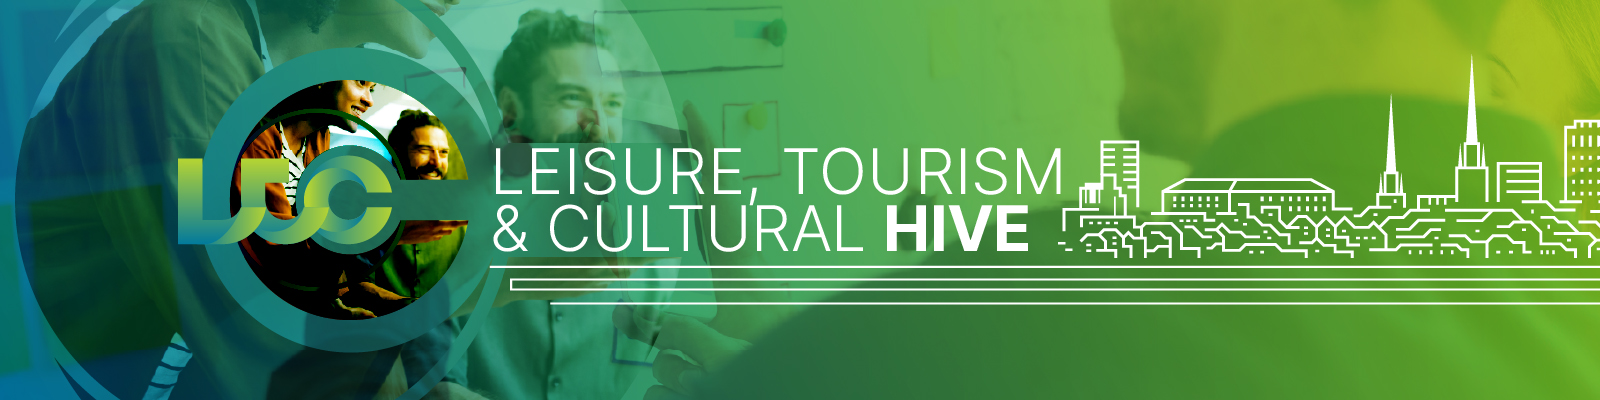 Leisure, Tourism & Cultural Hive